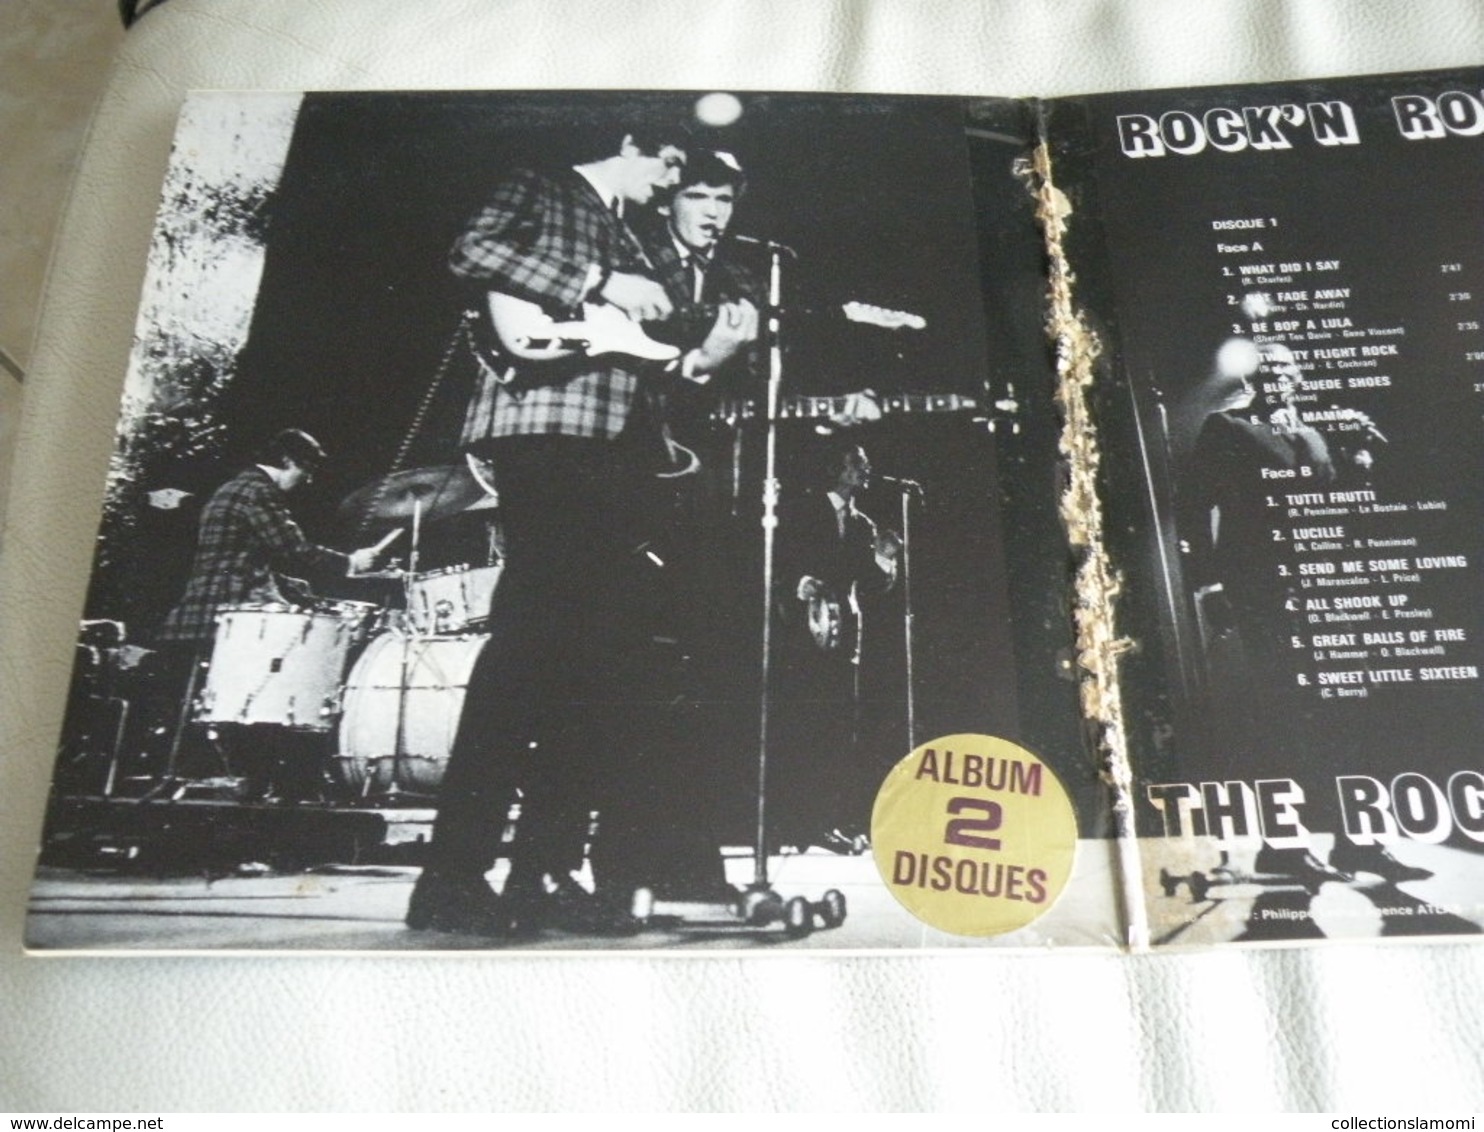 Rock'n Roll Story - The Rock Band Revival, festival (Titres sur photos) - Vinyle 33 T LP double album